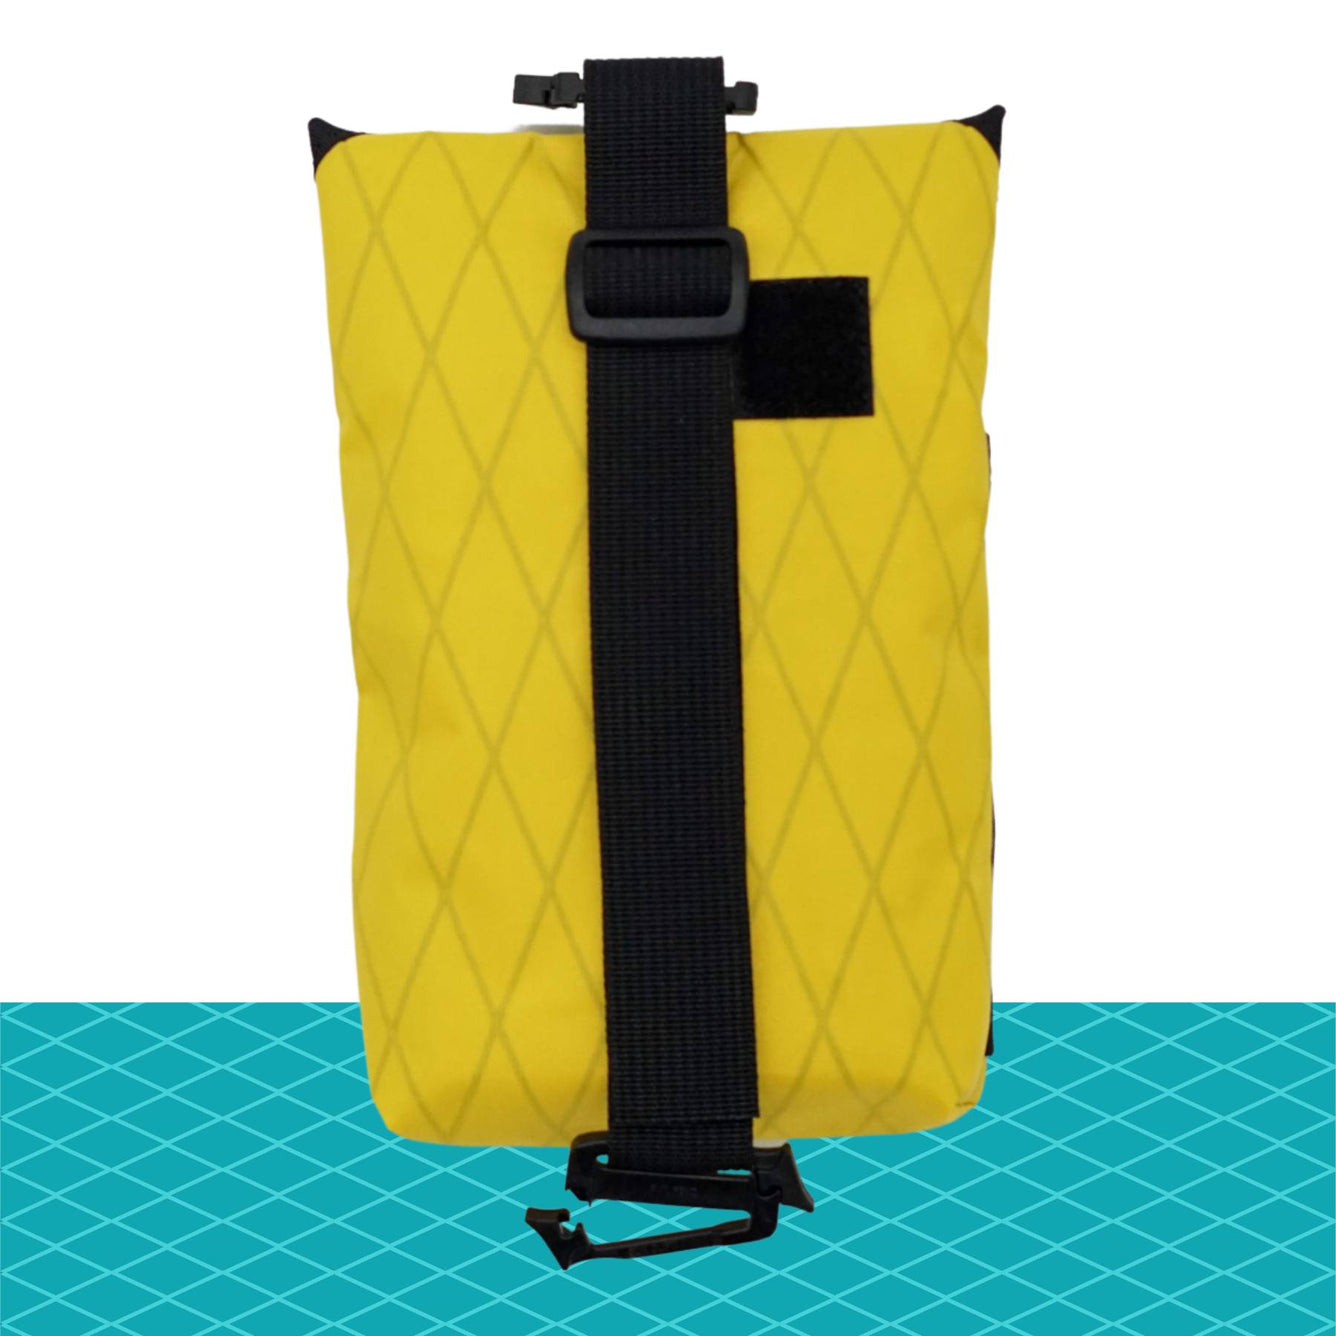 Shopp Phone/Crossbody Bag